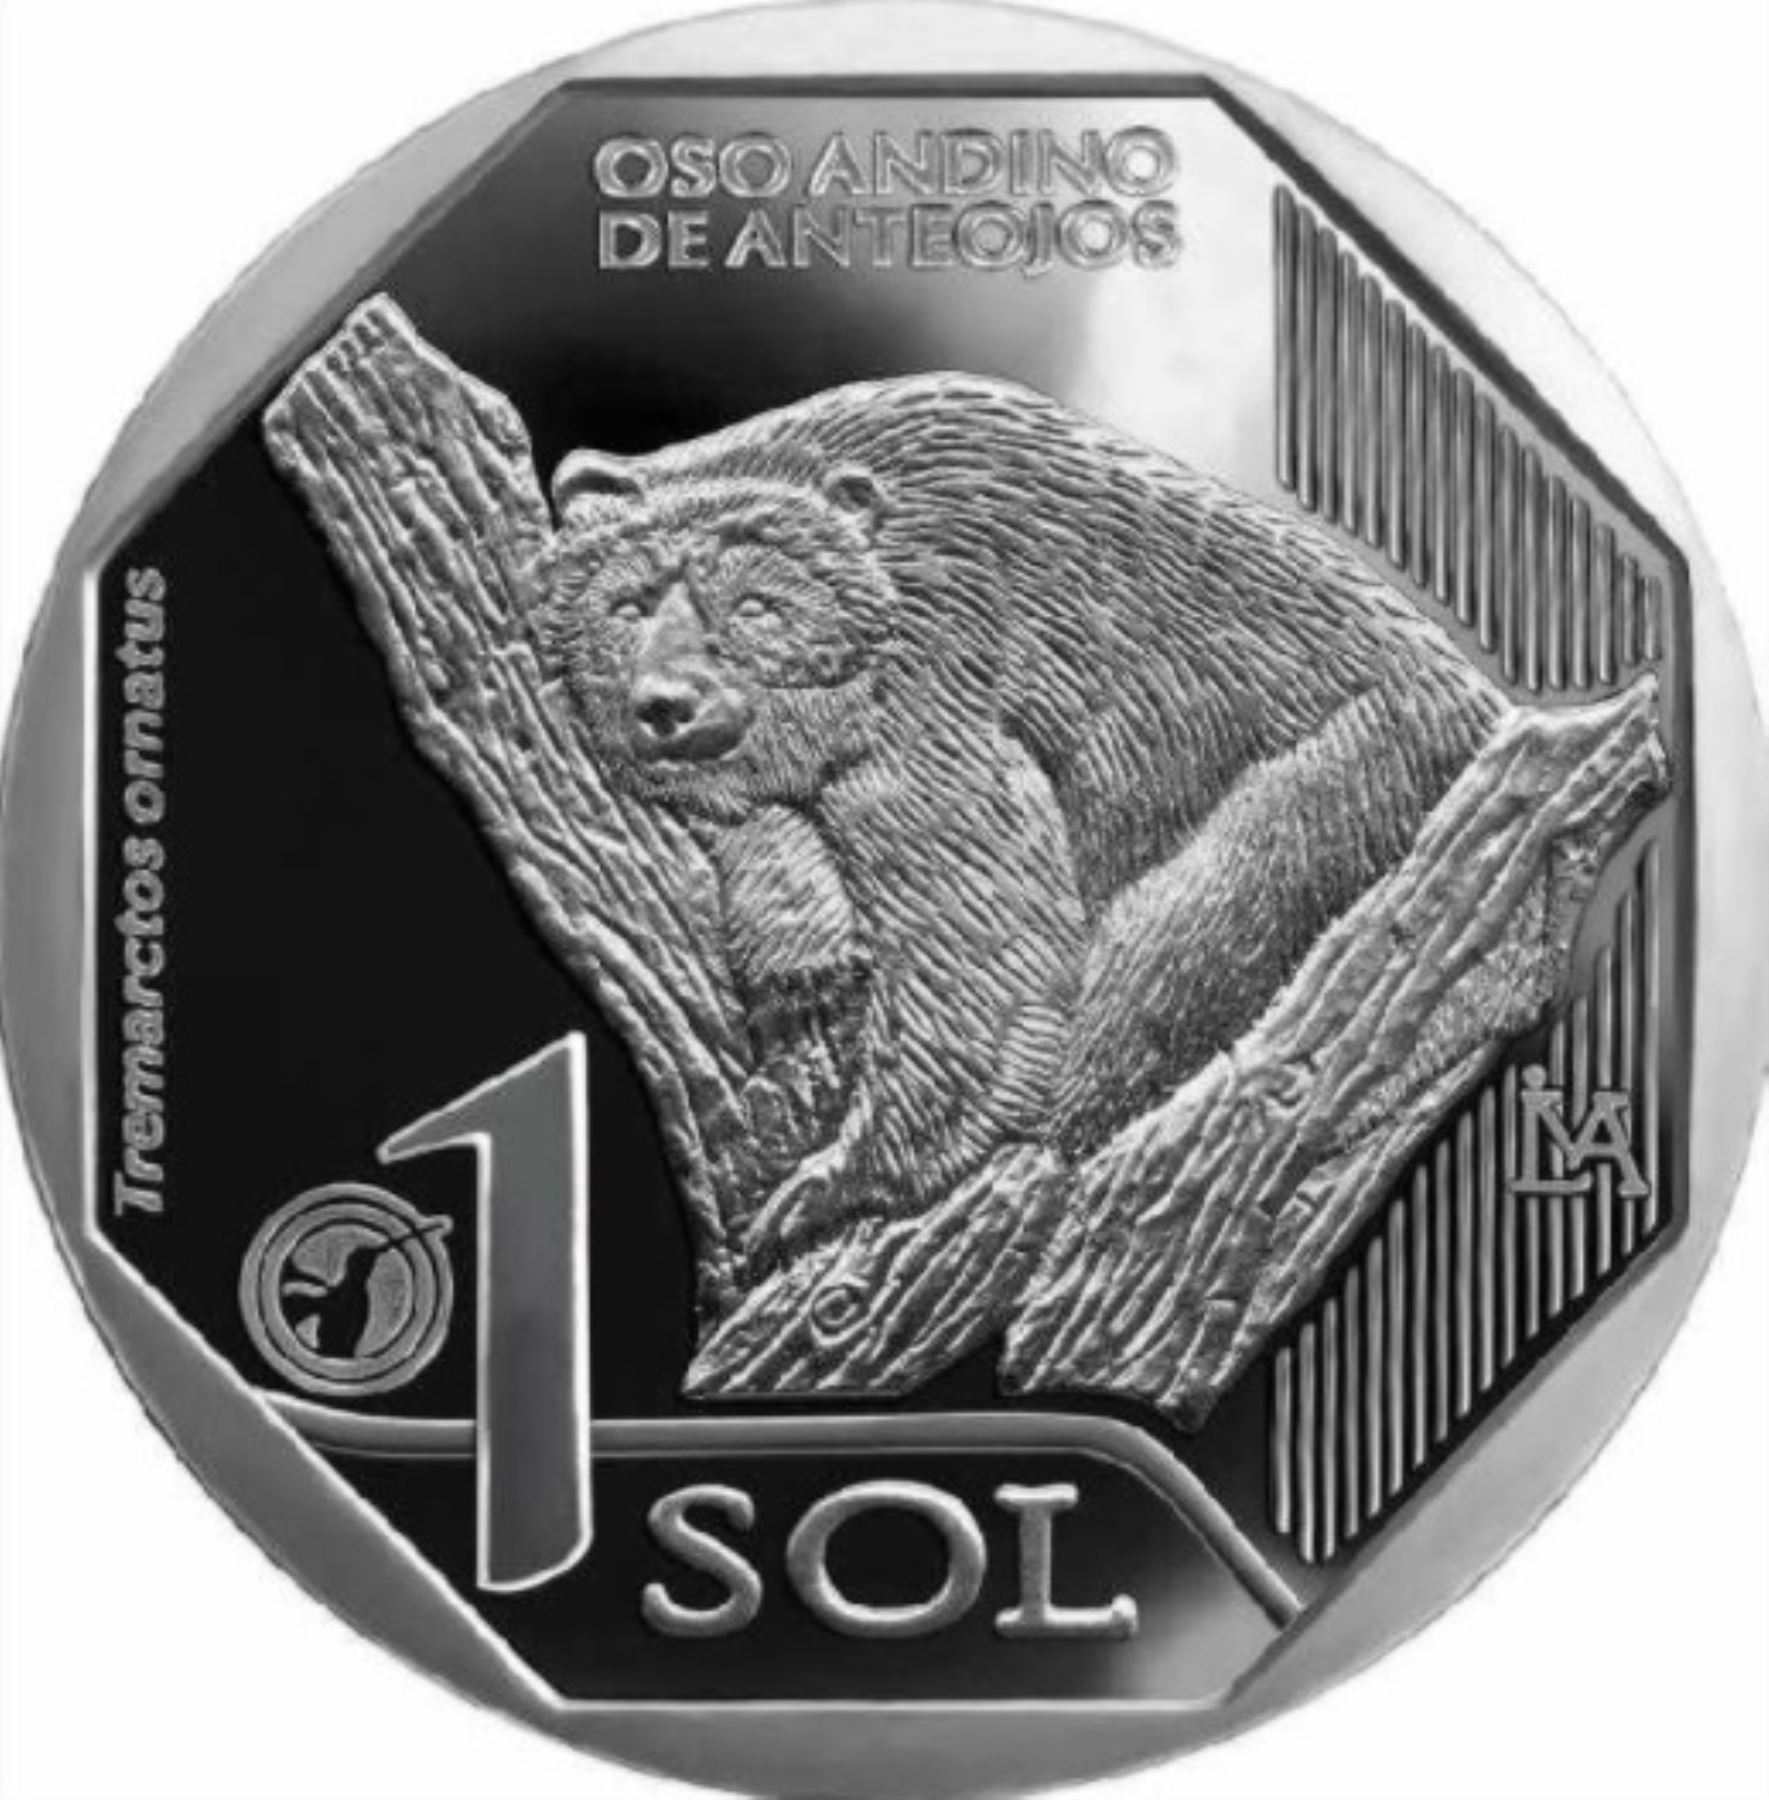 Áreas Naturales Protegidas celebran nueva moneda de S/ 1 alusiva al oso de anteojos